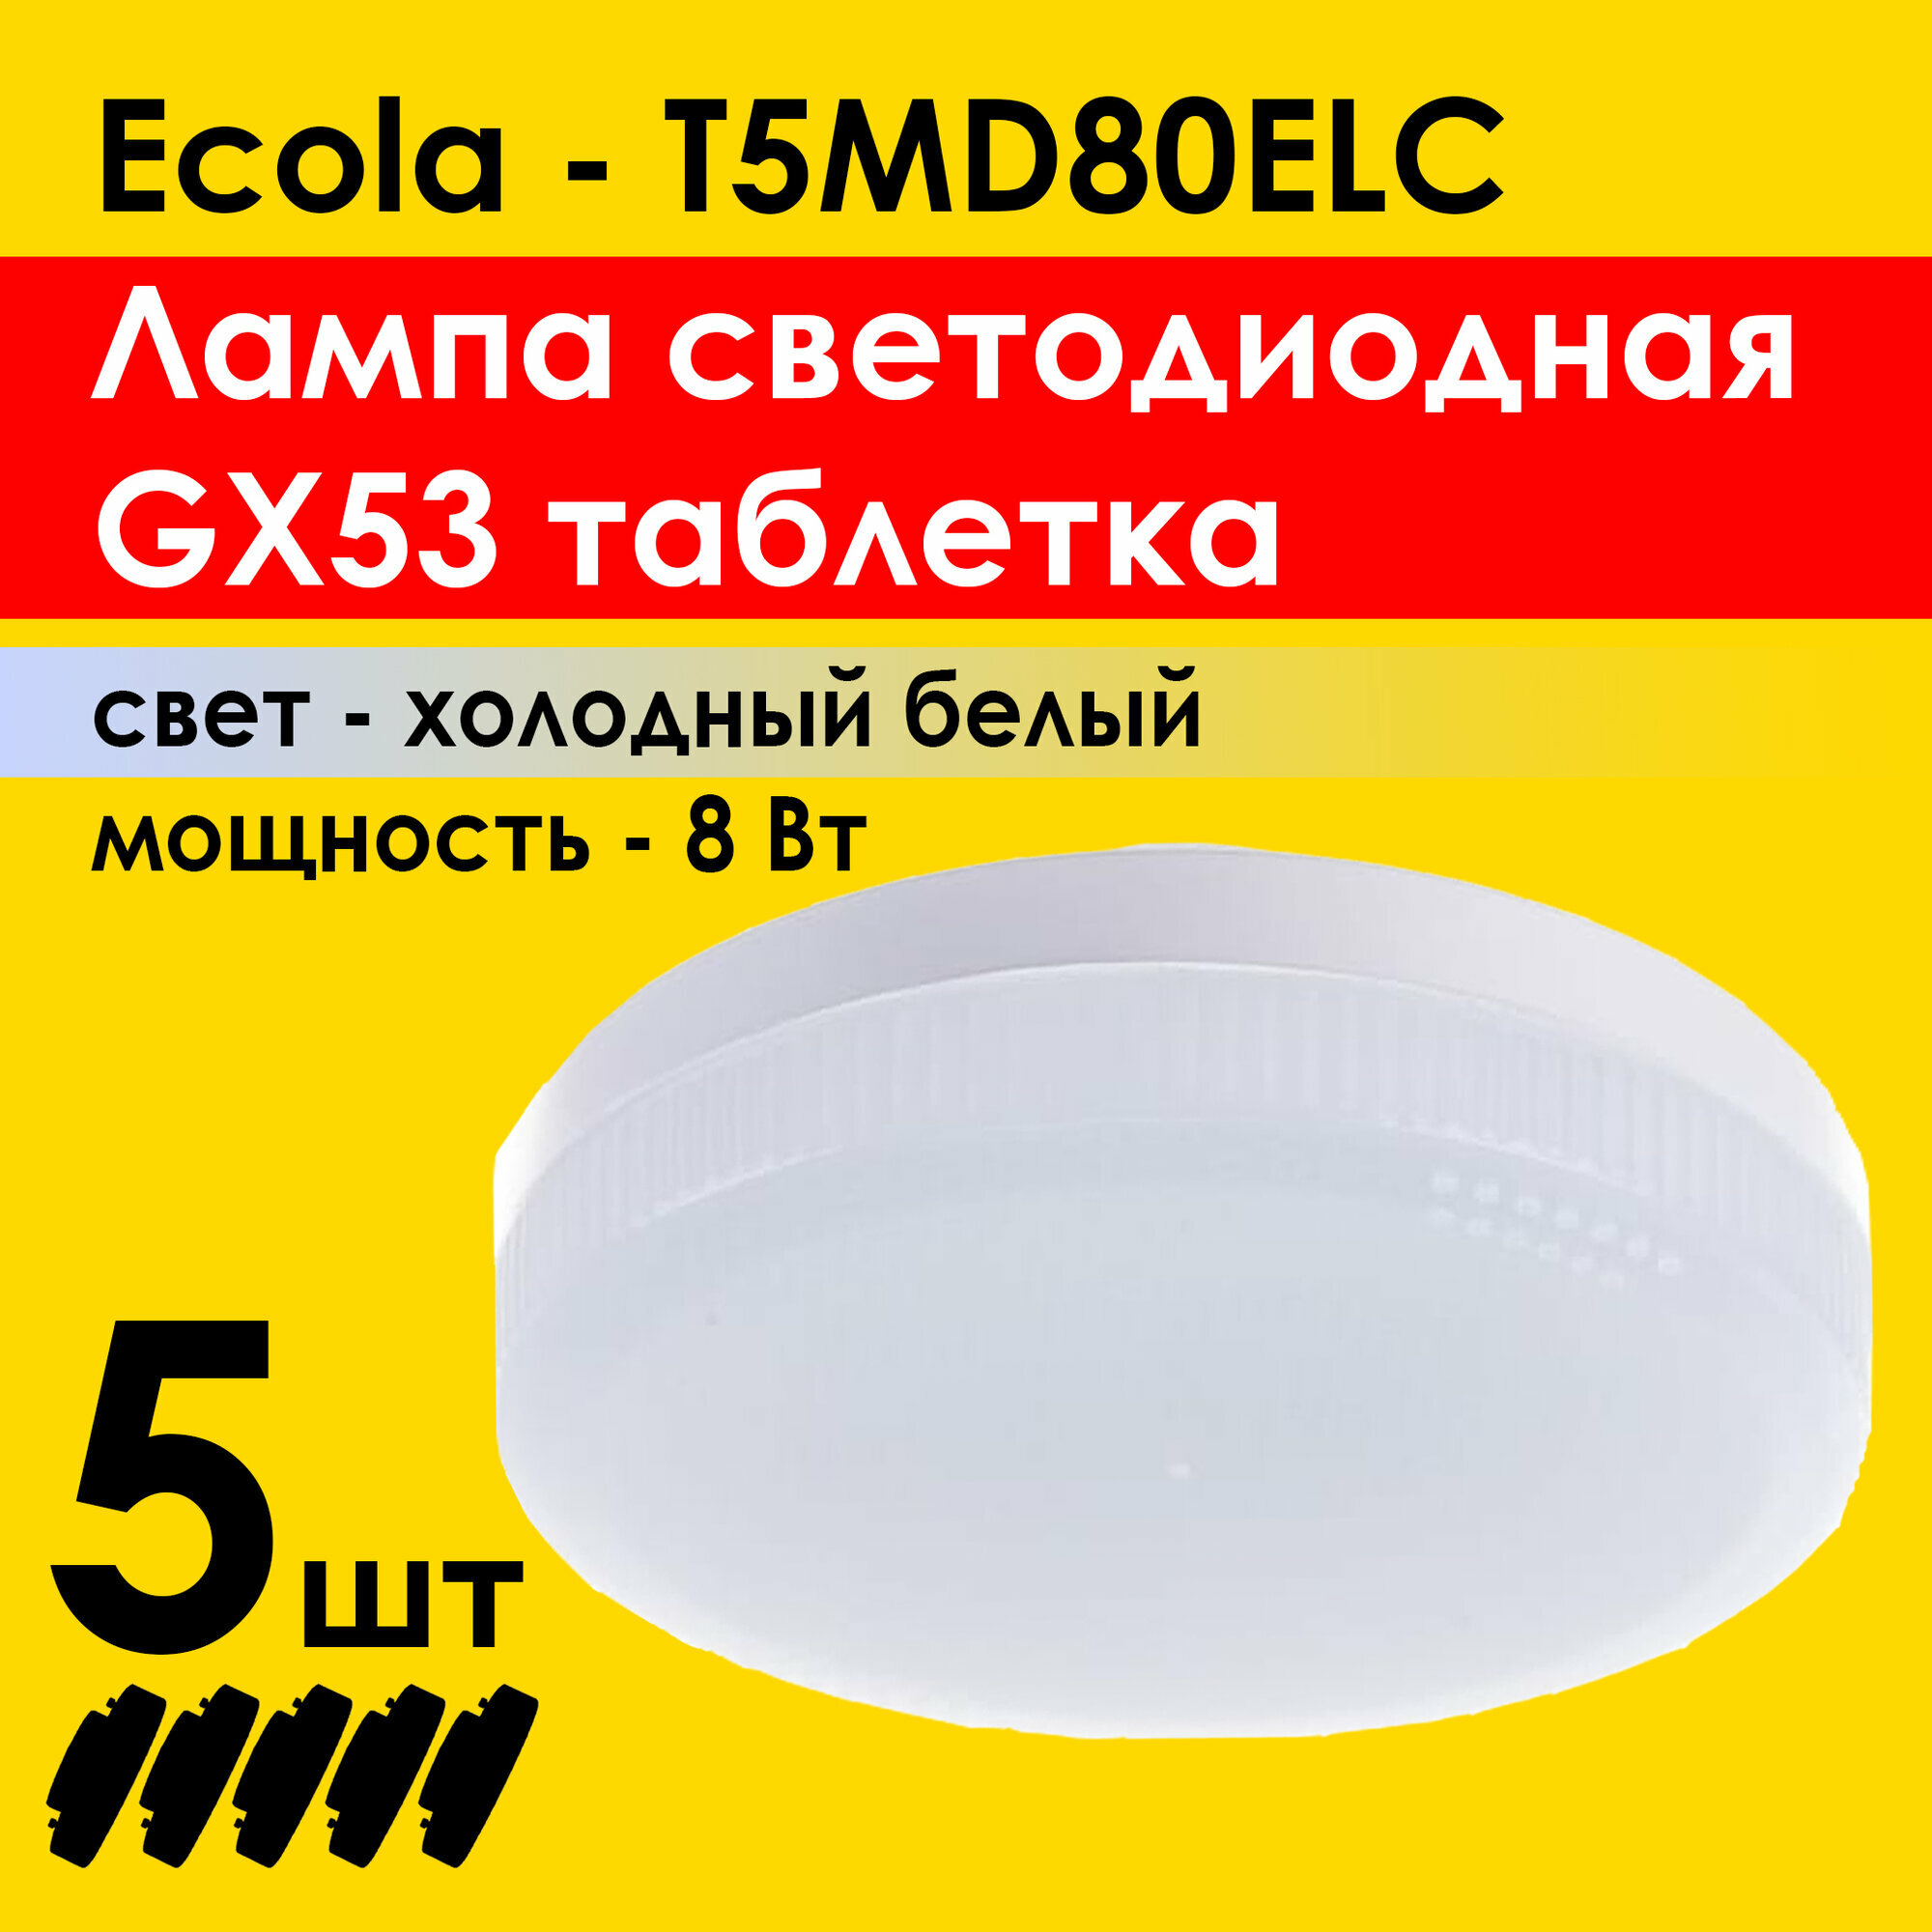 Лампа светодиодная (5штук) Ecola Light GX53 LED 8,0W Tablet 220V 6400K 27x75 холодный белый свет (T5MD80ELC)